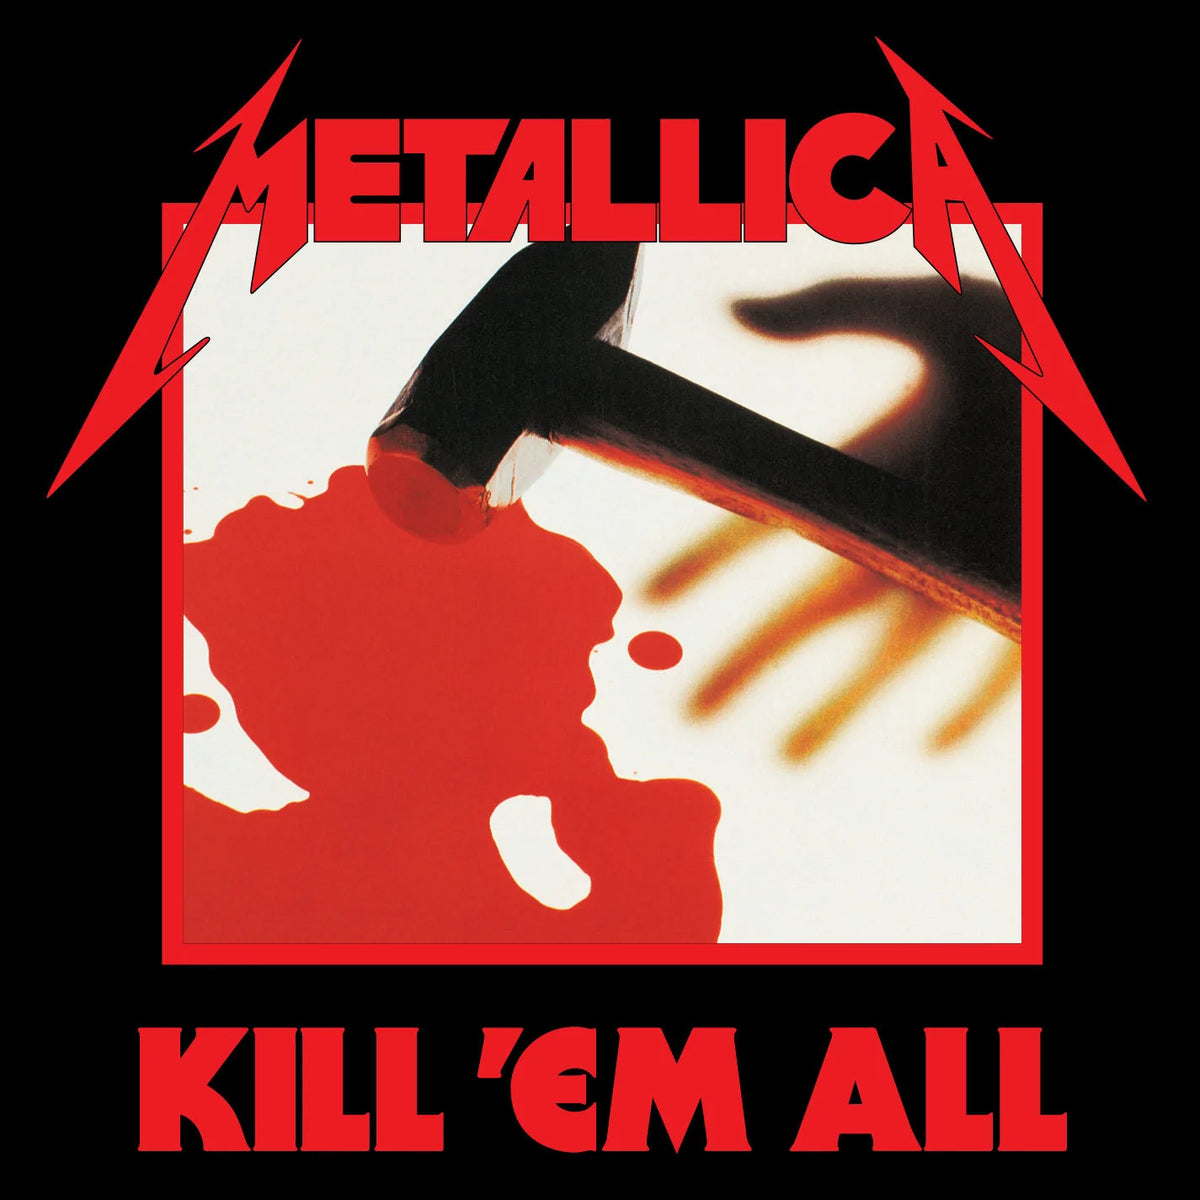 Metallica - Kill 'Em All LP (180g)